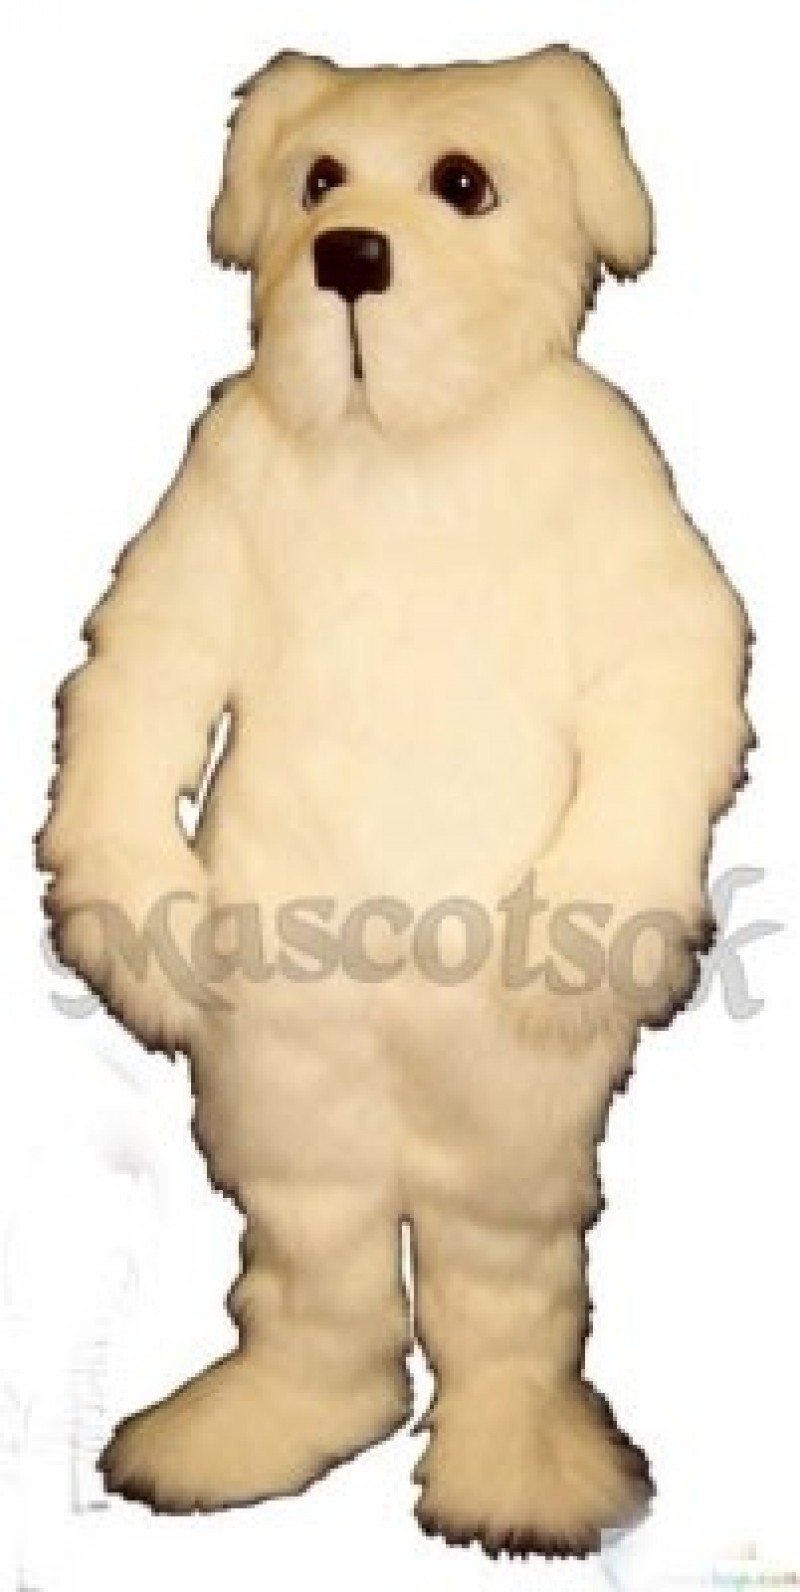 Cute Nipper Dog Mascot Costume